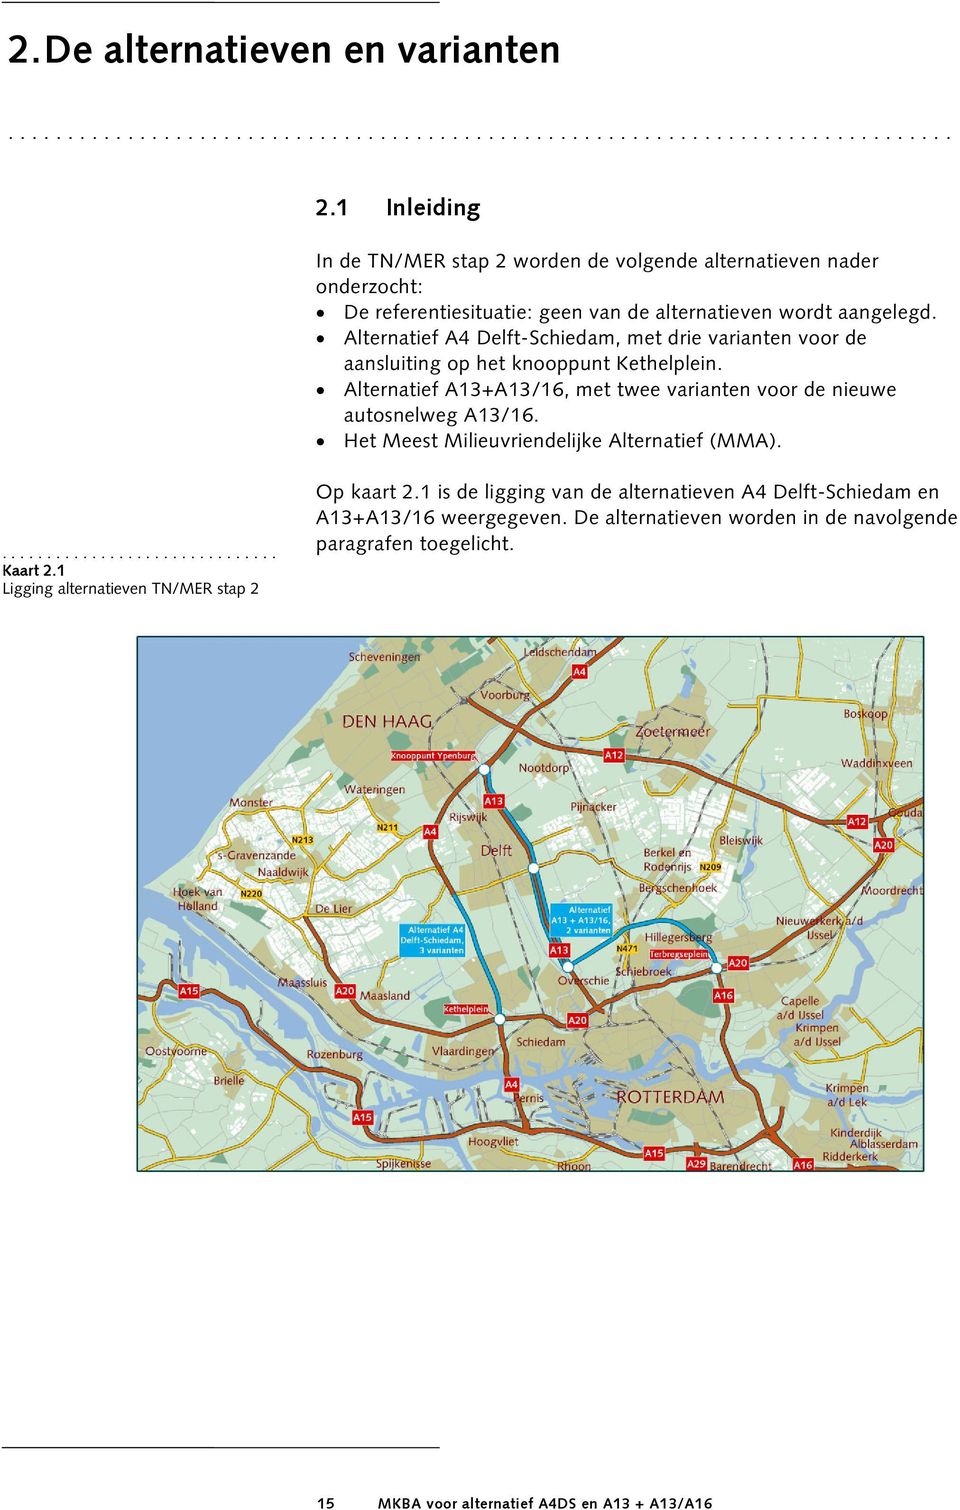 Alternatief A4 Delft-Schiedam, met drie varianten voor de aansluiting op het knooppunt Kethelplein. Alternatief A13+A13/16, met twee varianten voor de nieuwe autosnelweg A13/16.